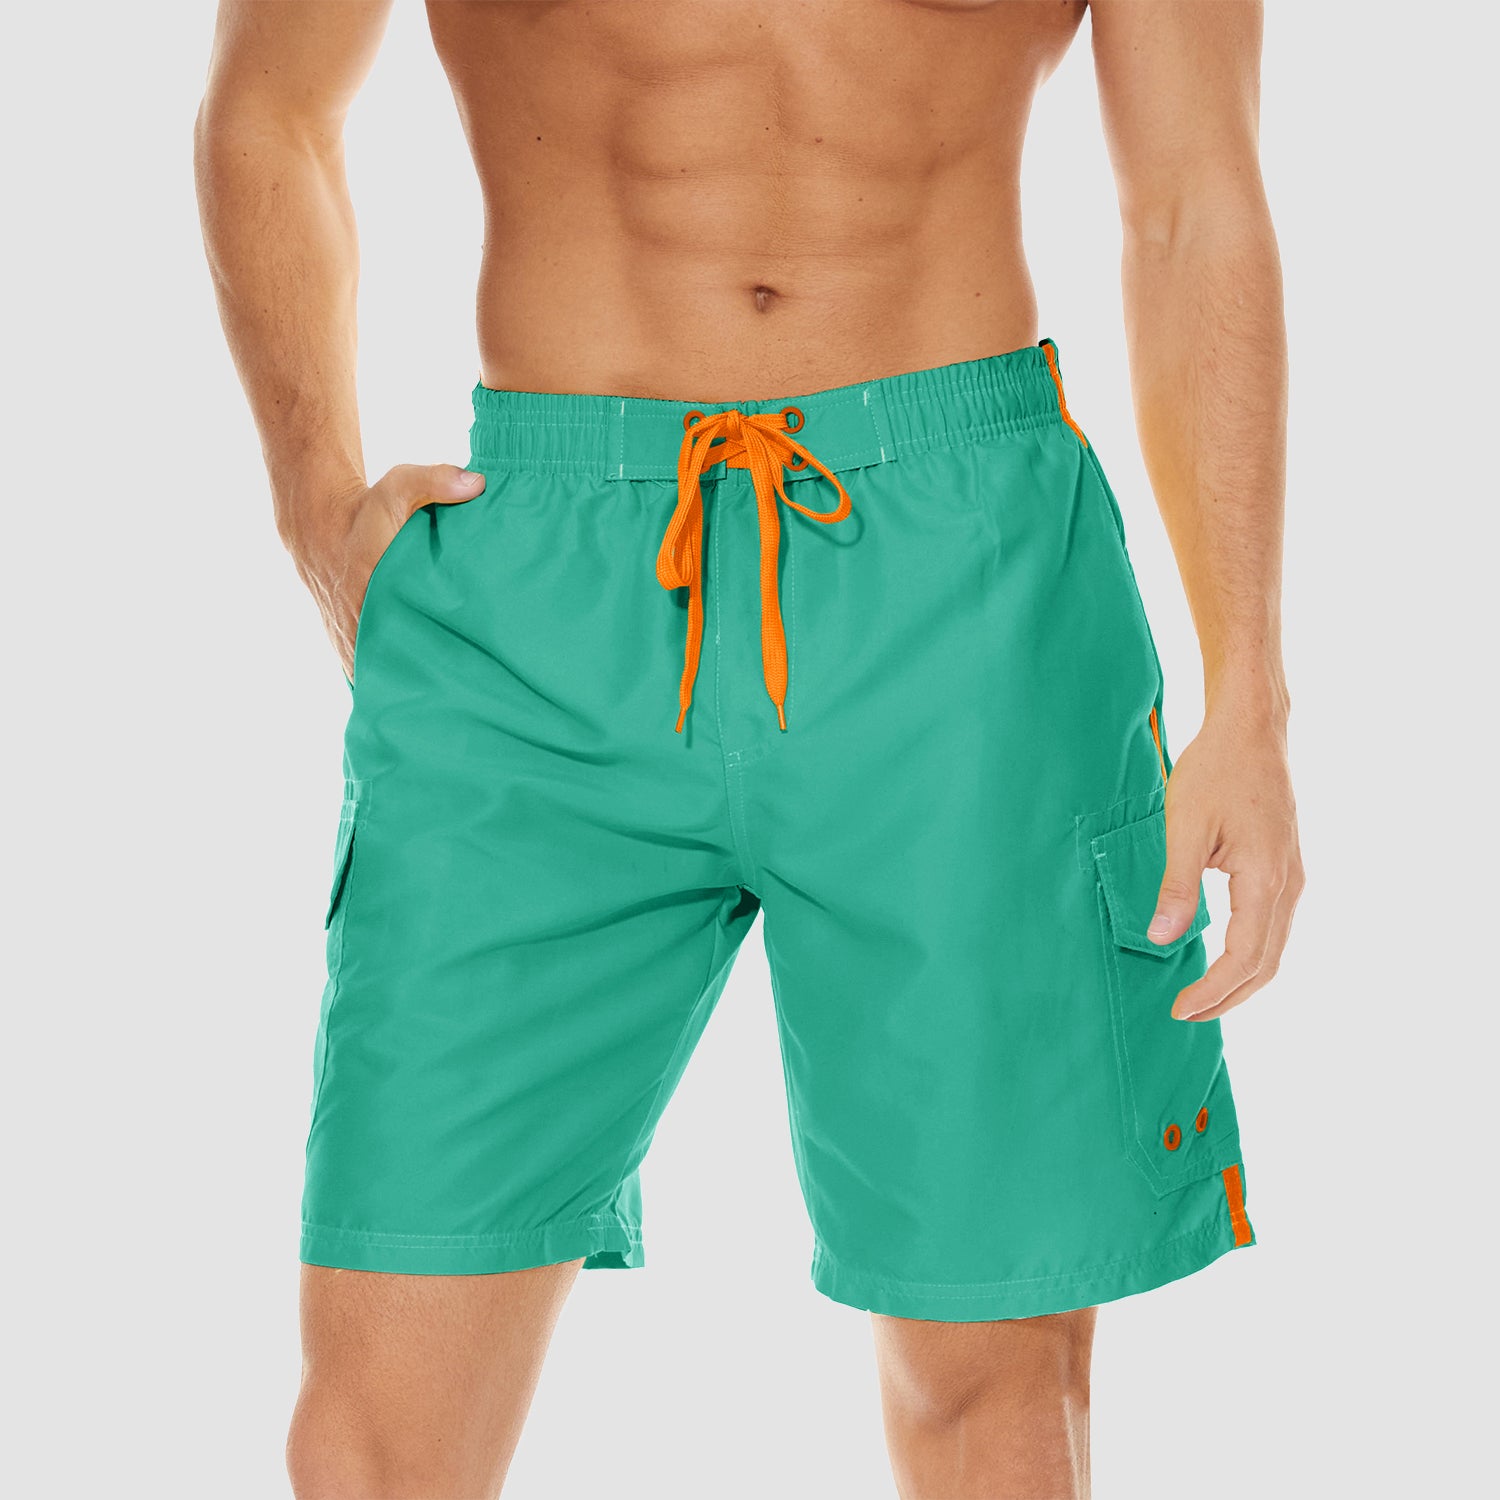 Men's Swimming Trunks Mesh Linner 4 Pockets Quick Dry Beach Shorts